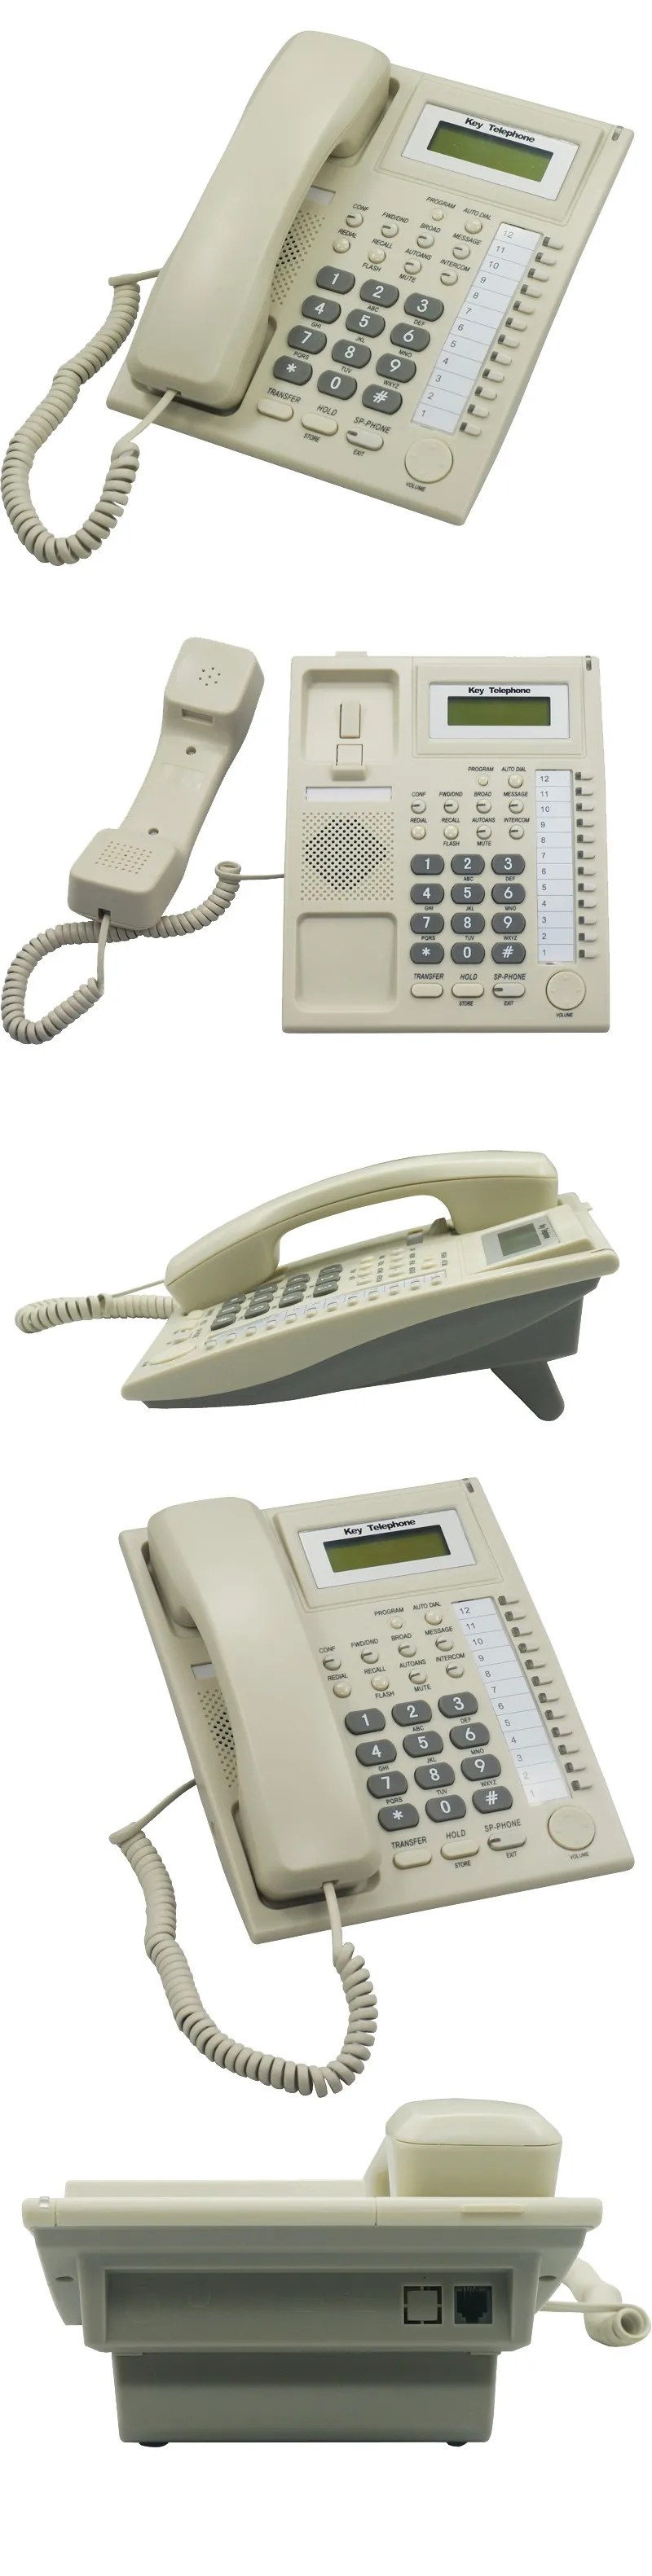 Эксклюзивный телефон PH201 для телефонной системы Excelltel PBX